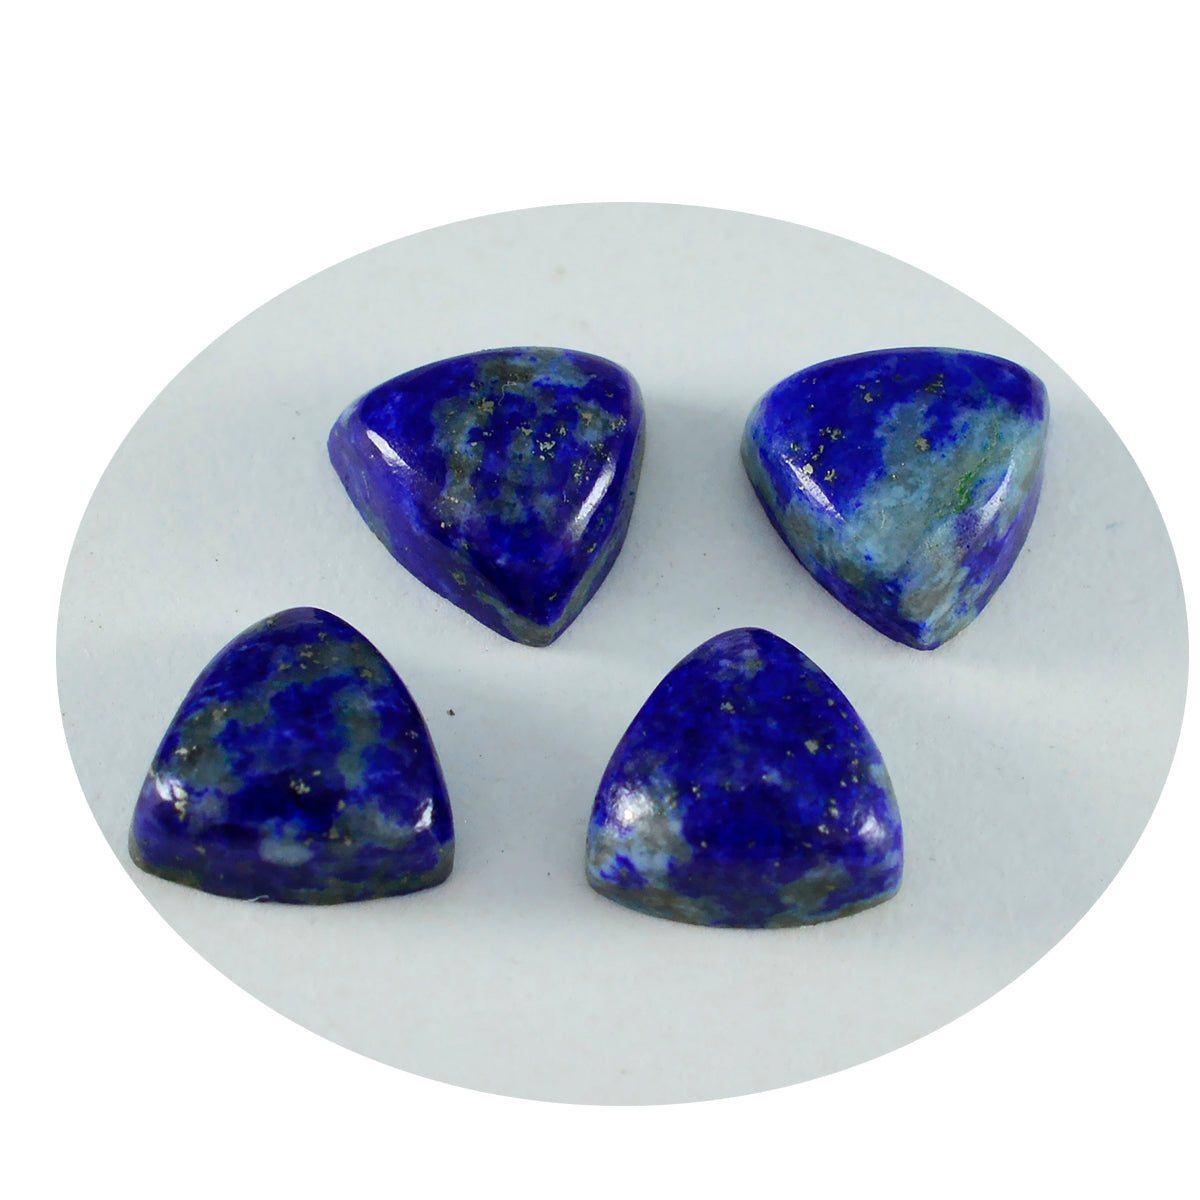 riyogems 1 шт. синий лазурит кабошон 14x14 мм форма триллион удивительного качества россыпь драгоценных камней